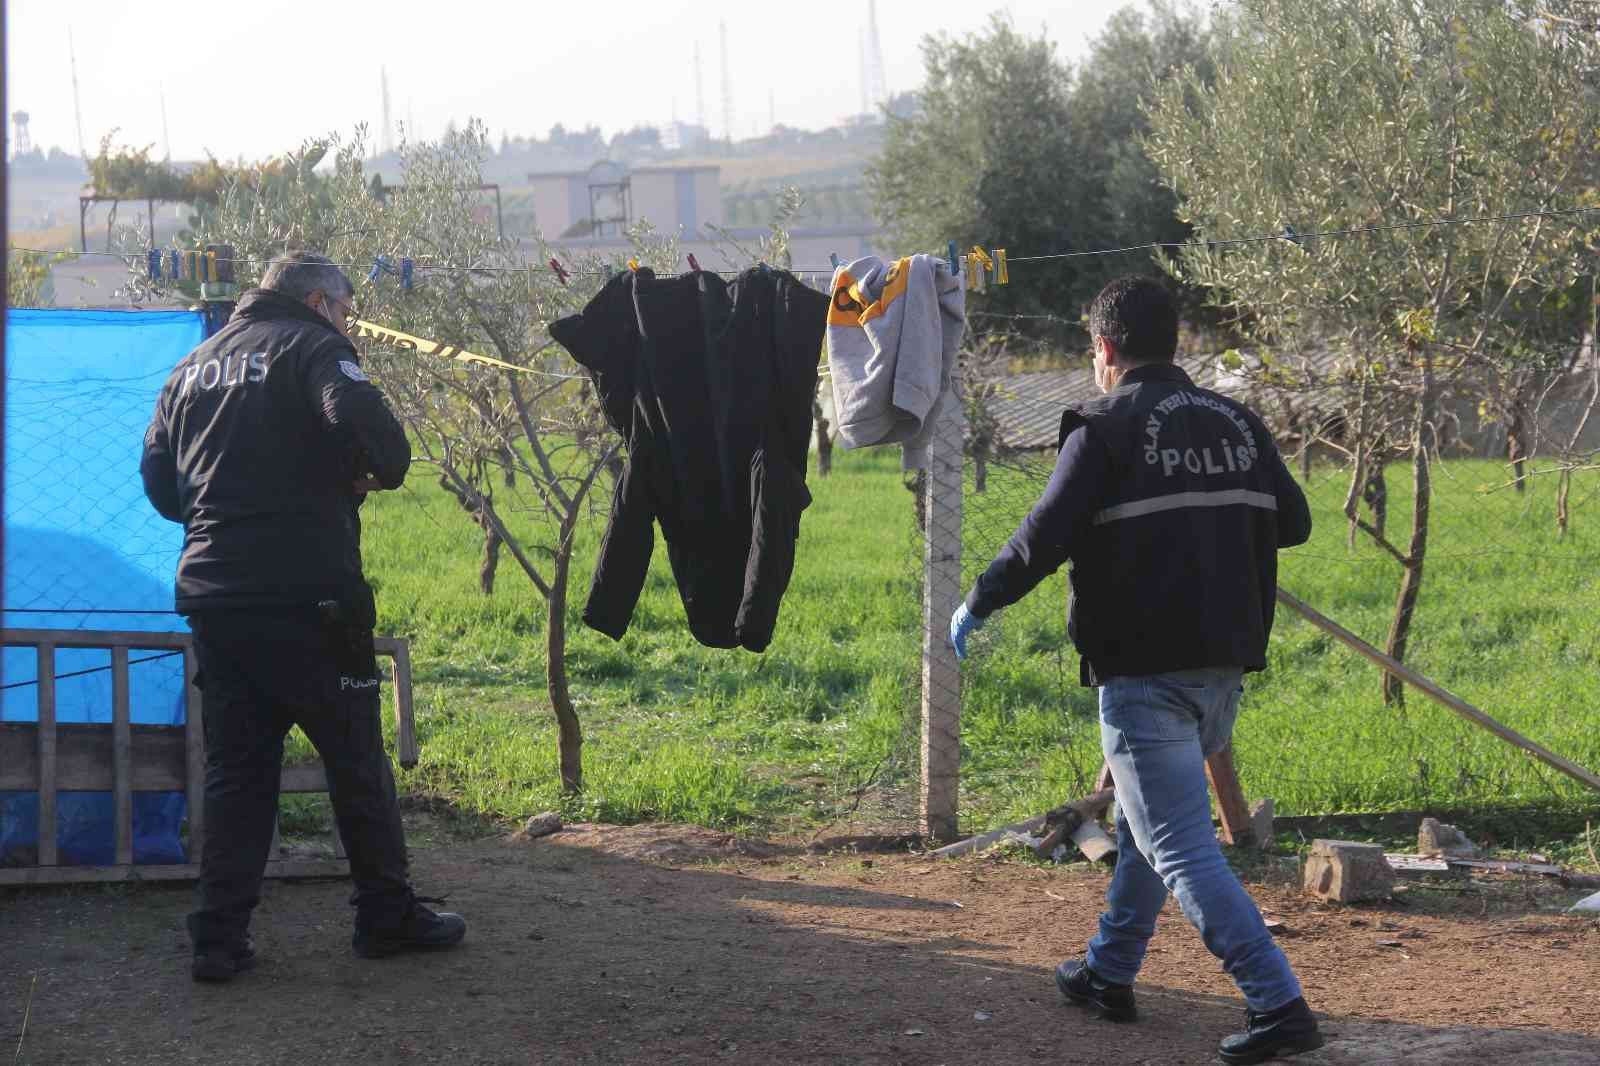 Adana’da motosiklet hırsızlığı kavgası: 3 ölü #adana